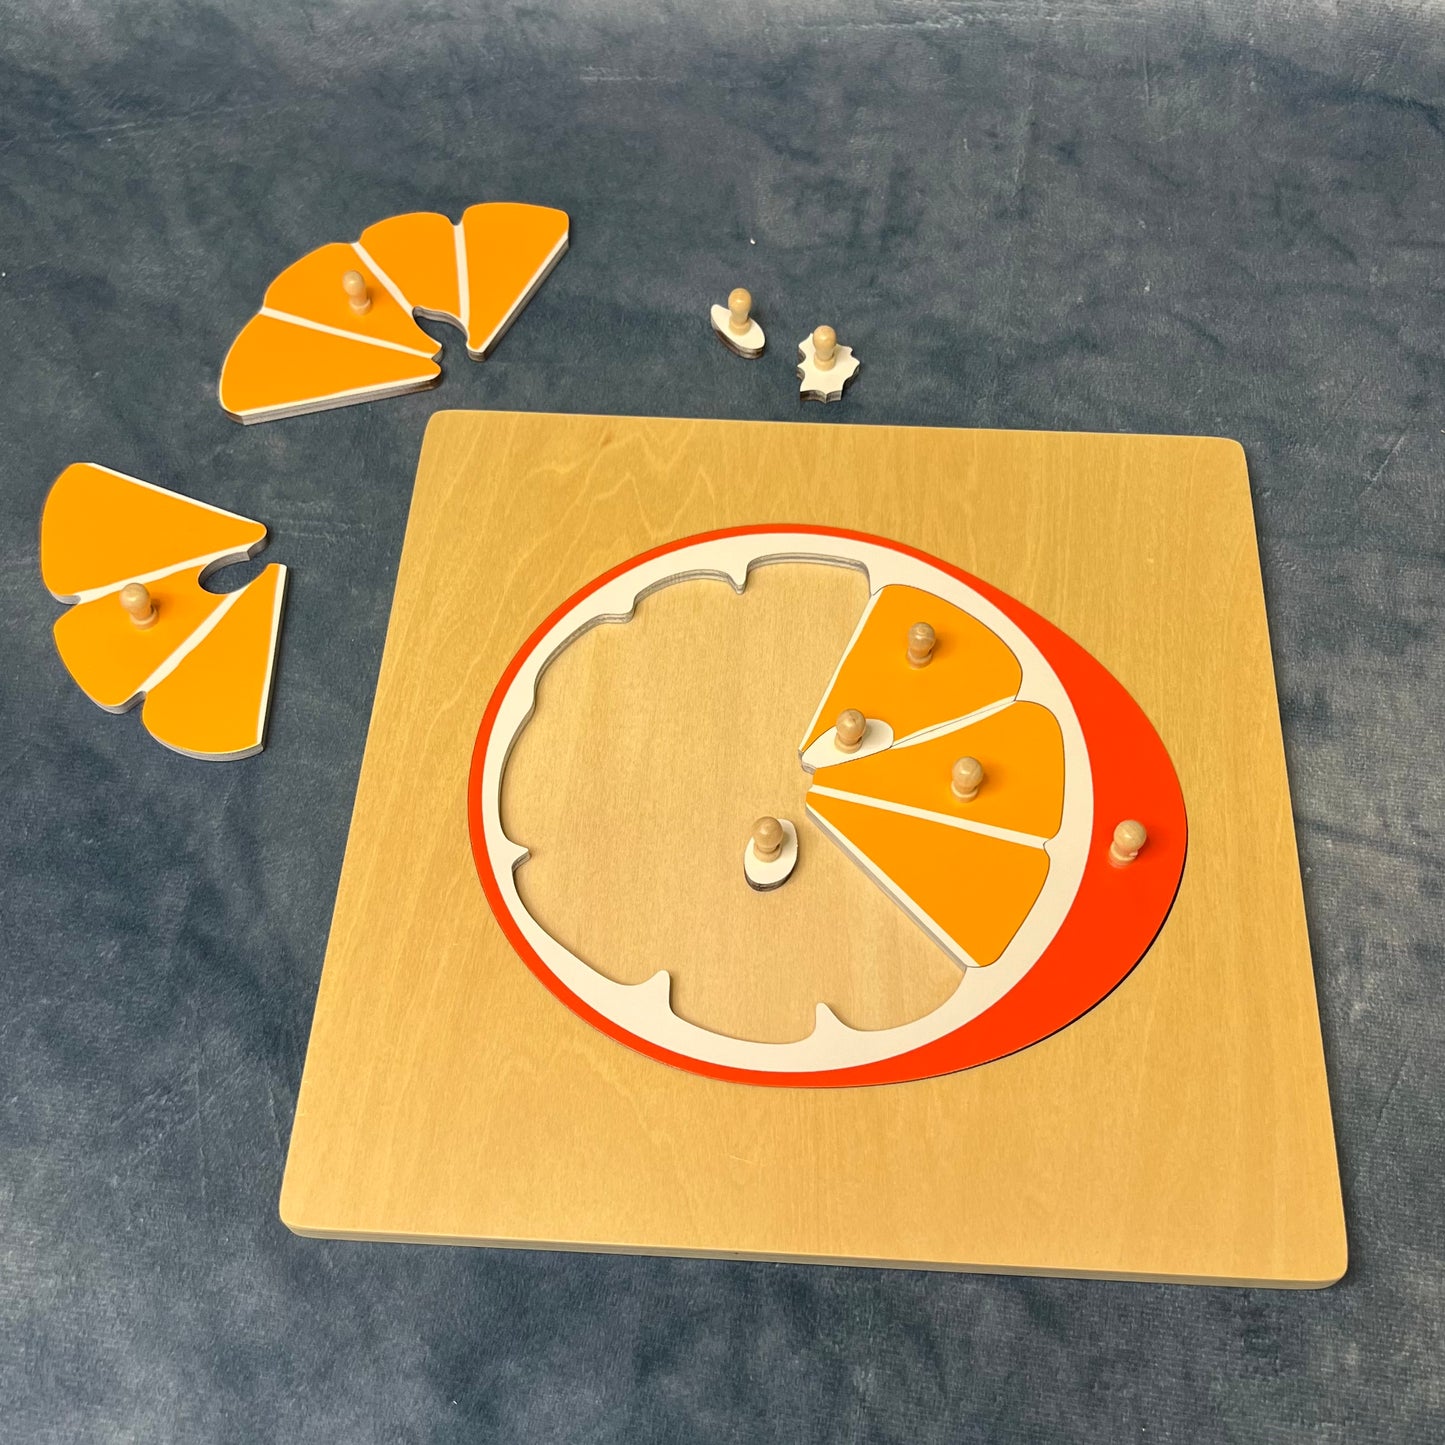 Orange puzzle